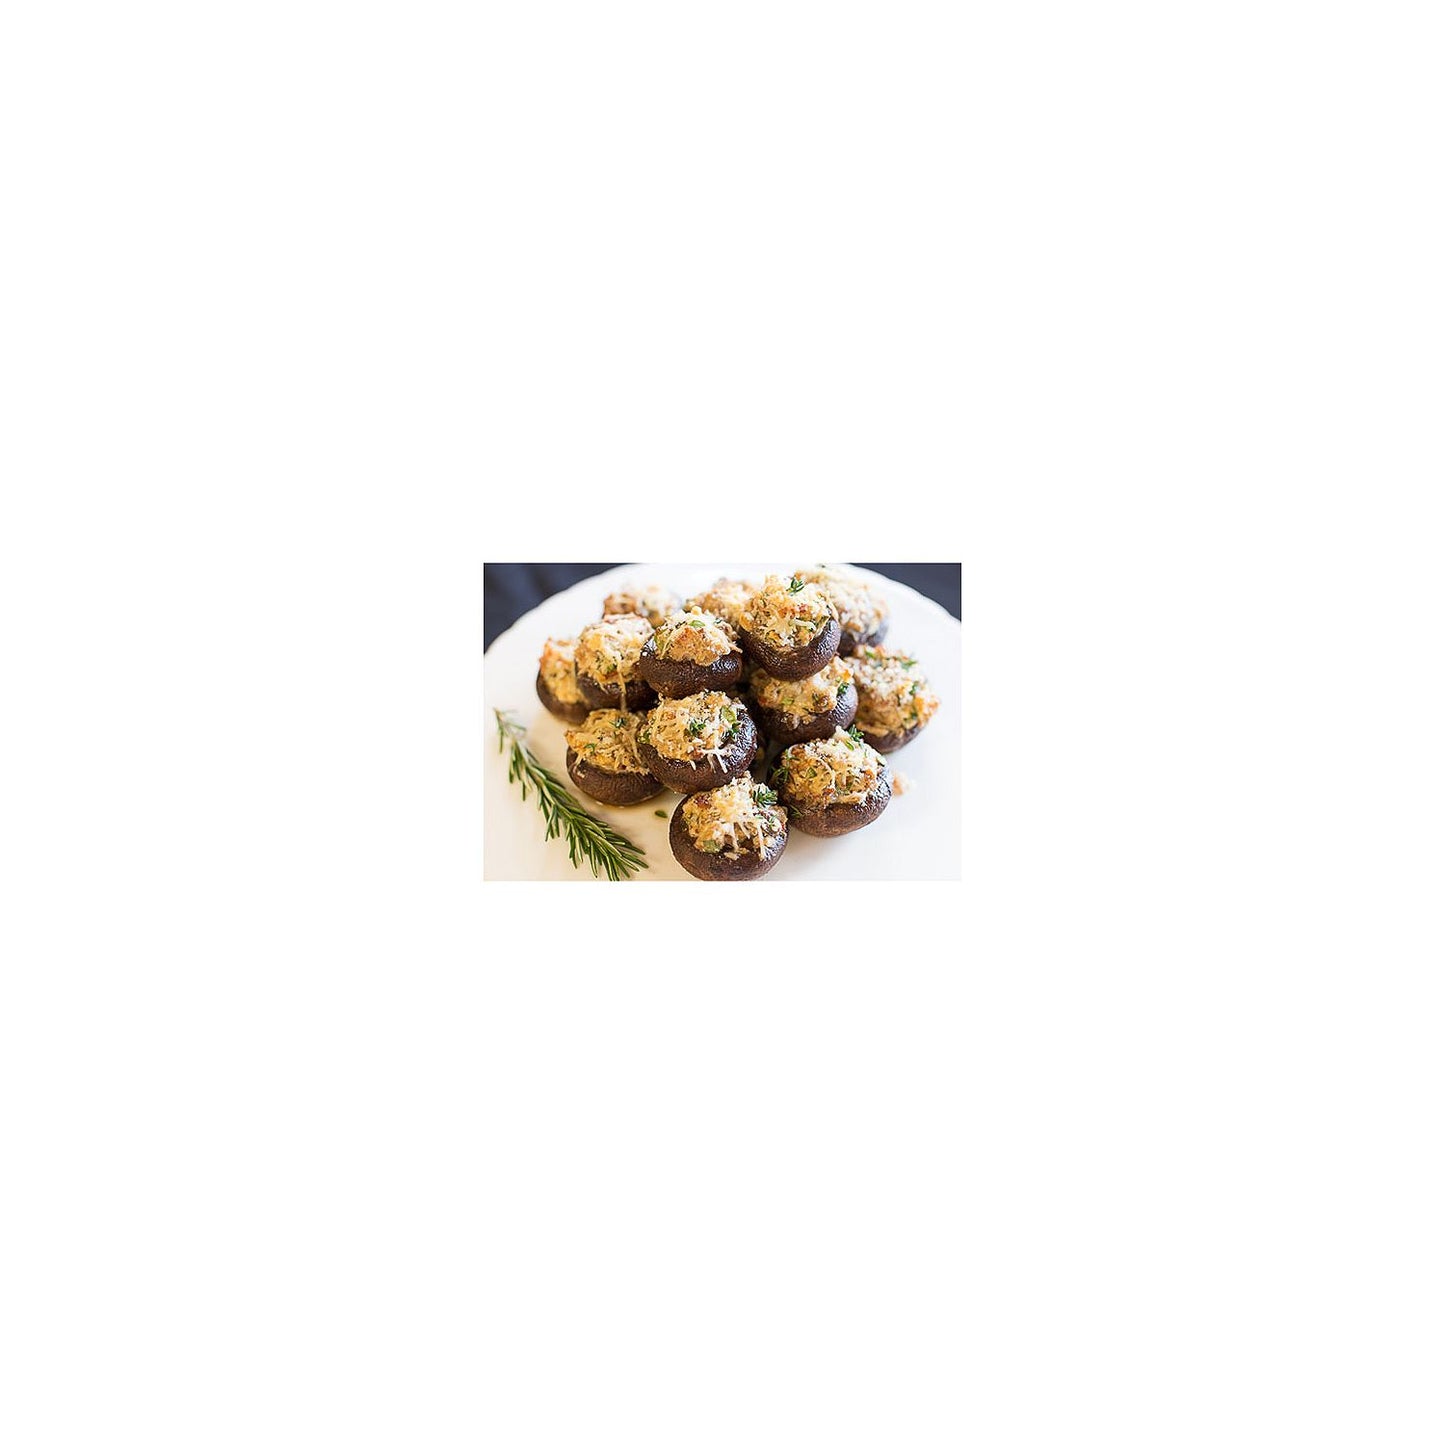 Baby Portabella Mushrooms (24 oz.)